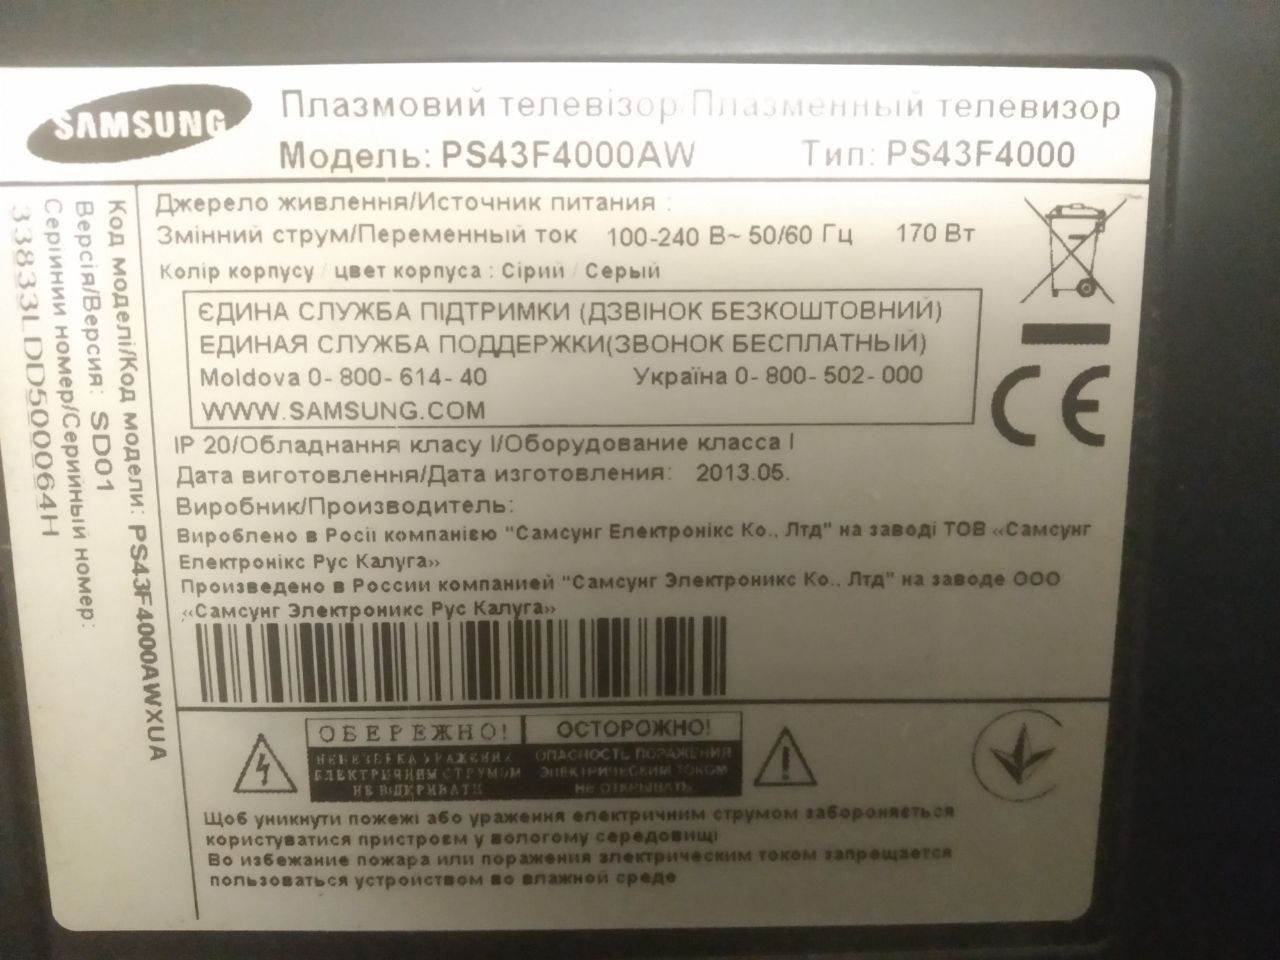 Телевизор Samsung 43 PS43F4000 AW